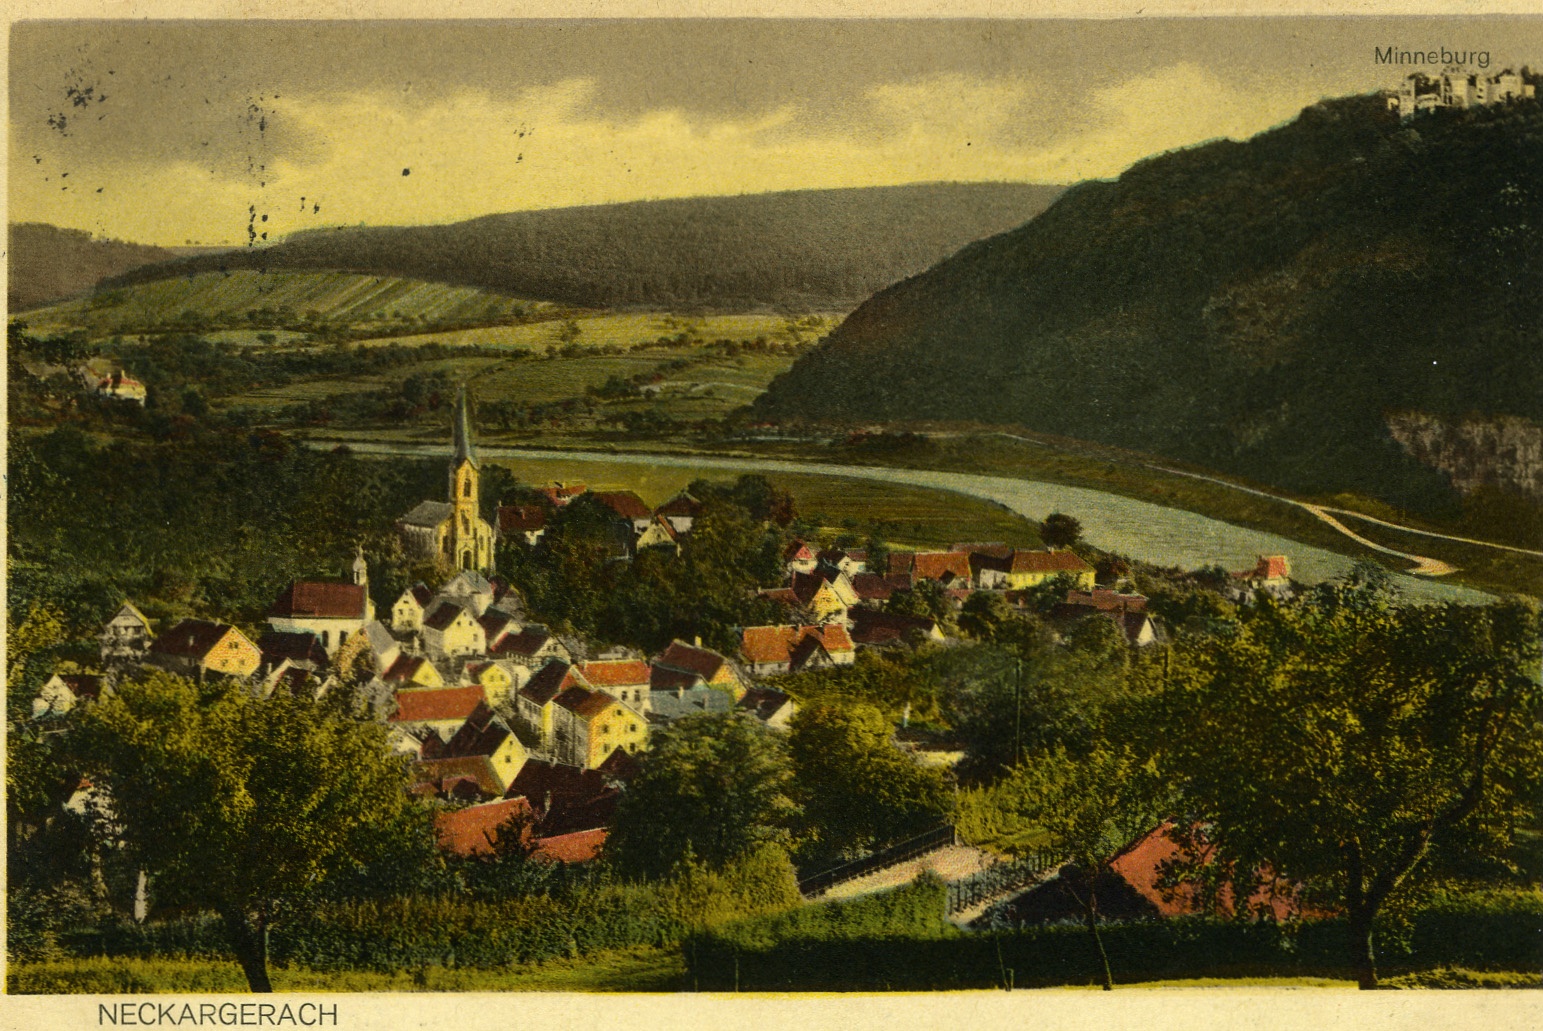 Postkarte Mannheim 1914 (Historisches Museum der Pfalz, Speyer CC BY)